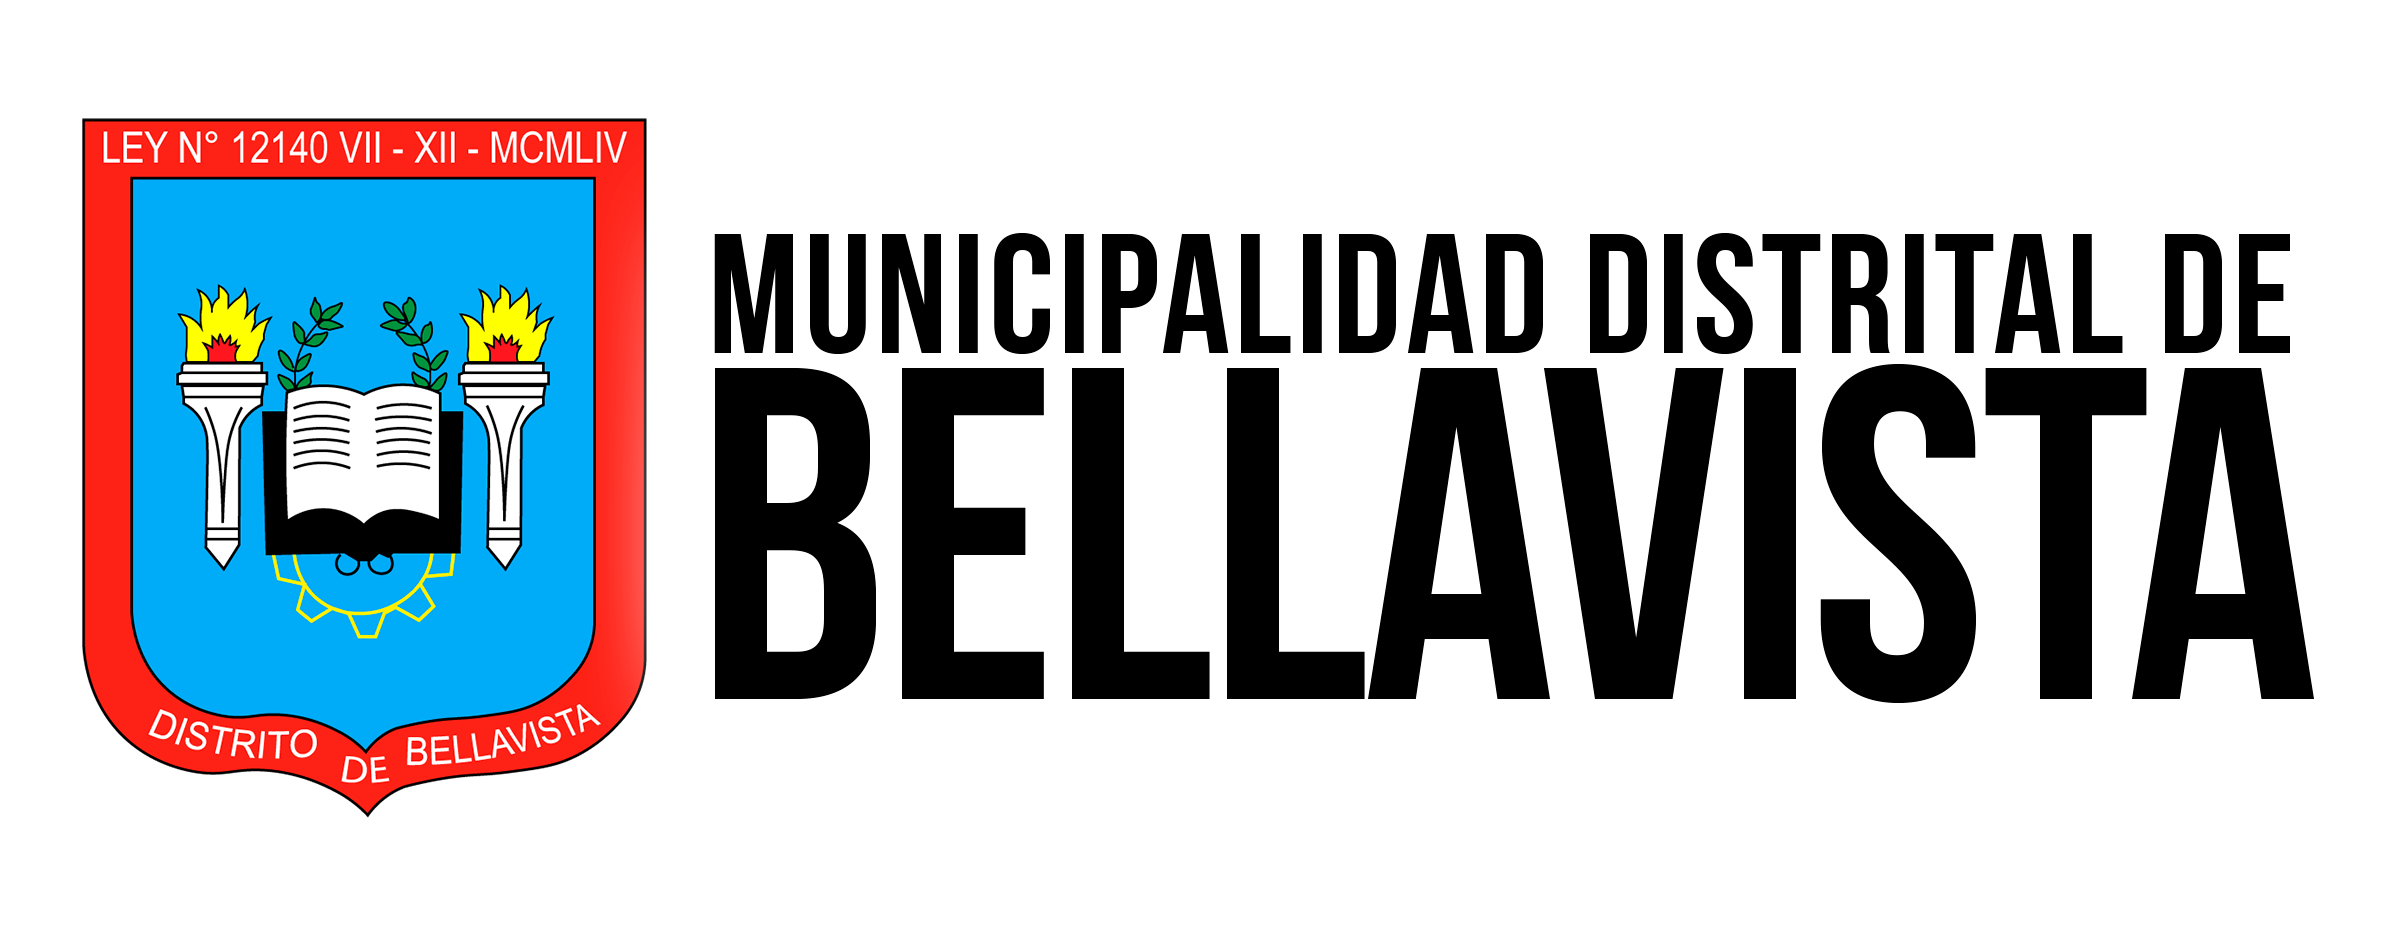 Municipalidad Distrital de Bellavista